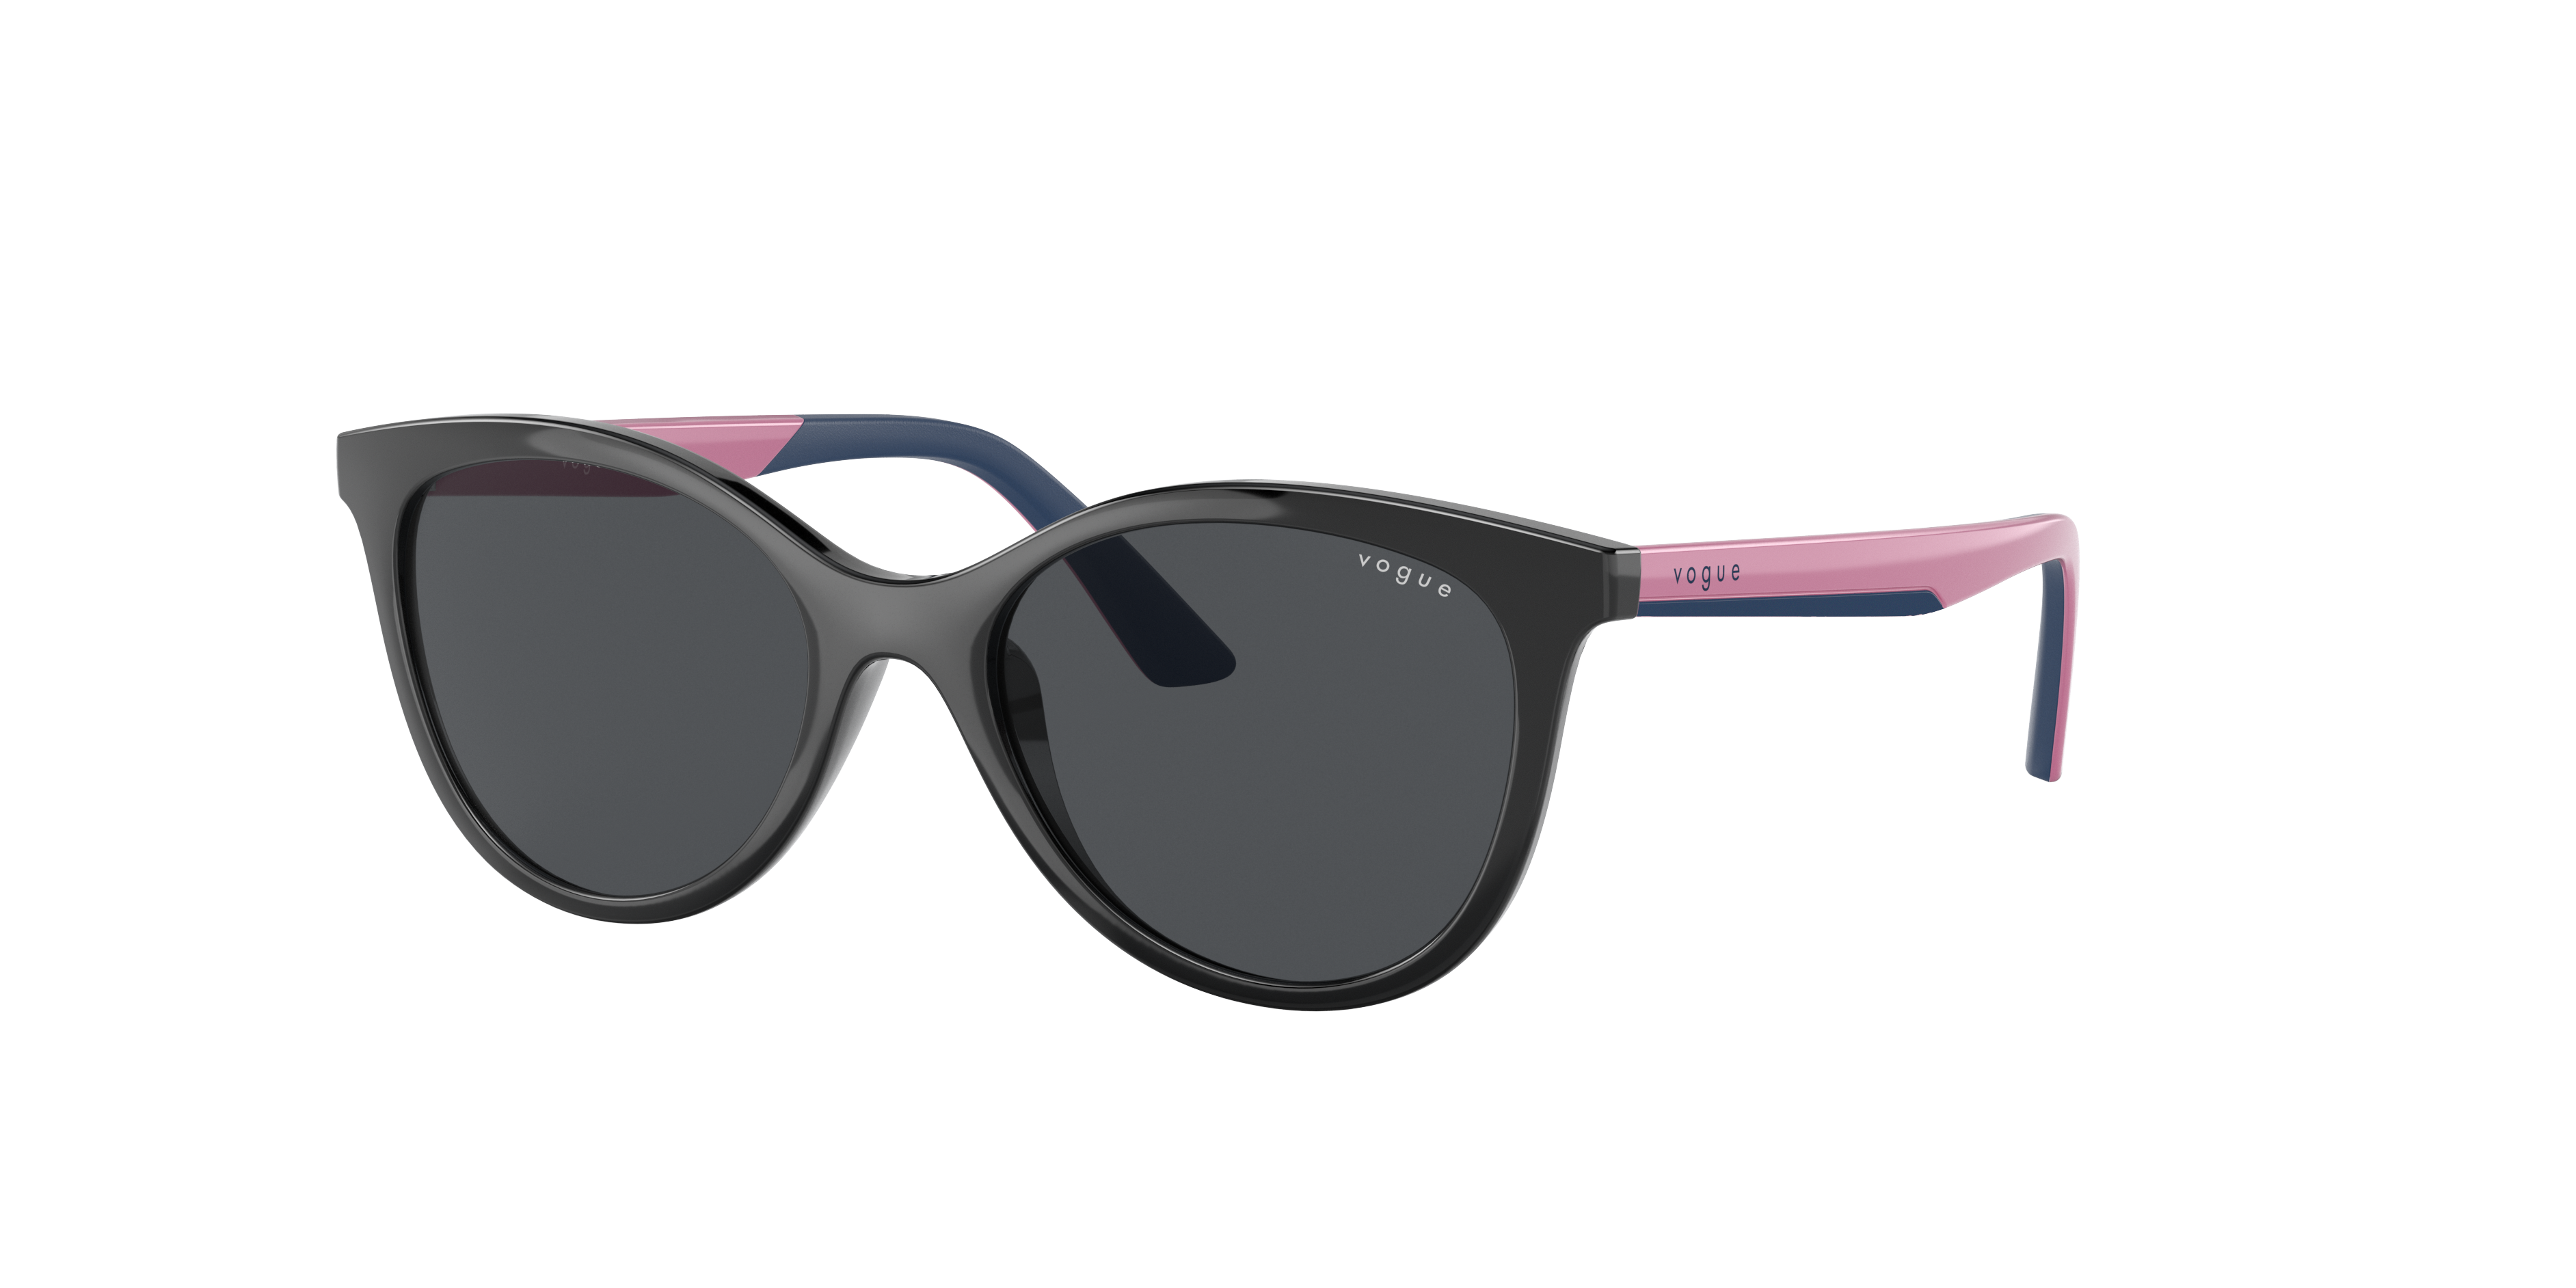 Consulte nosso catálogo de Óculos de Sol Vogue Eyewear com diversos modelos e preços para sua escolha.